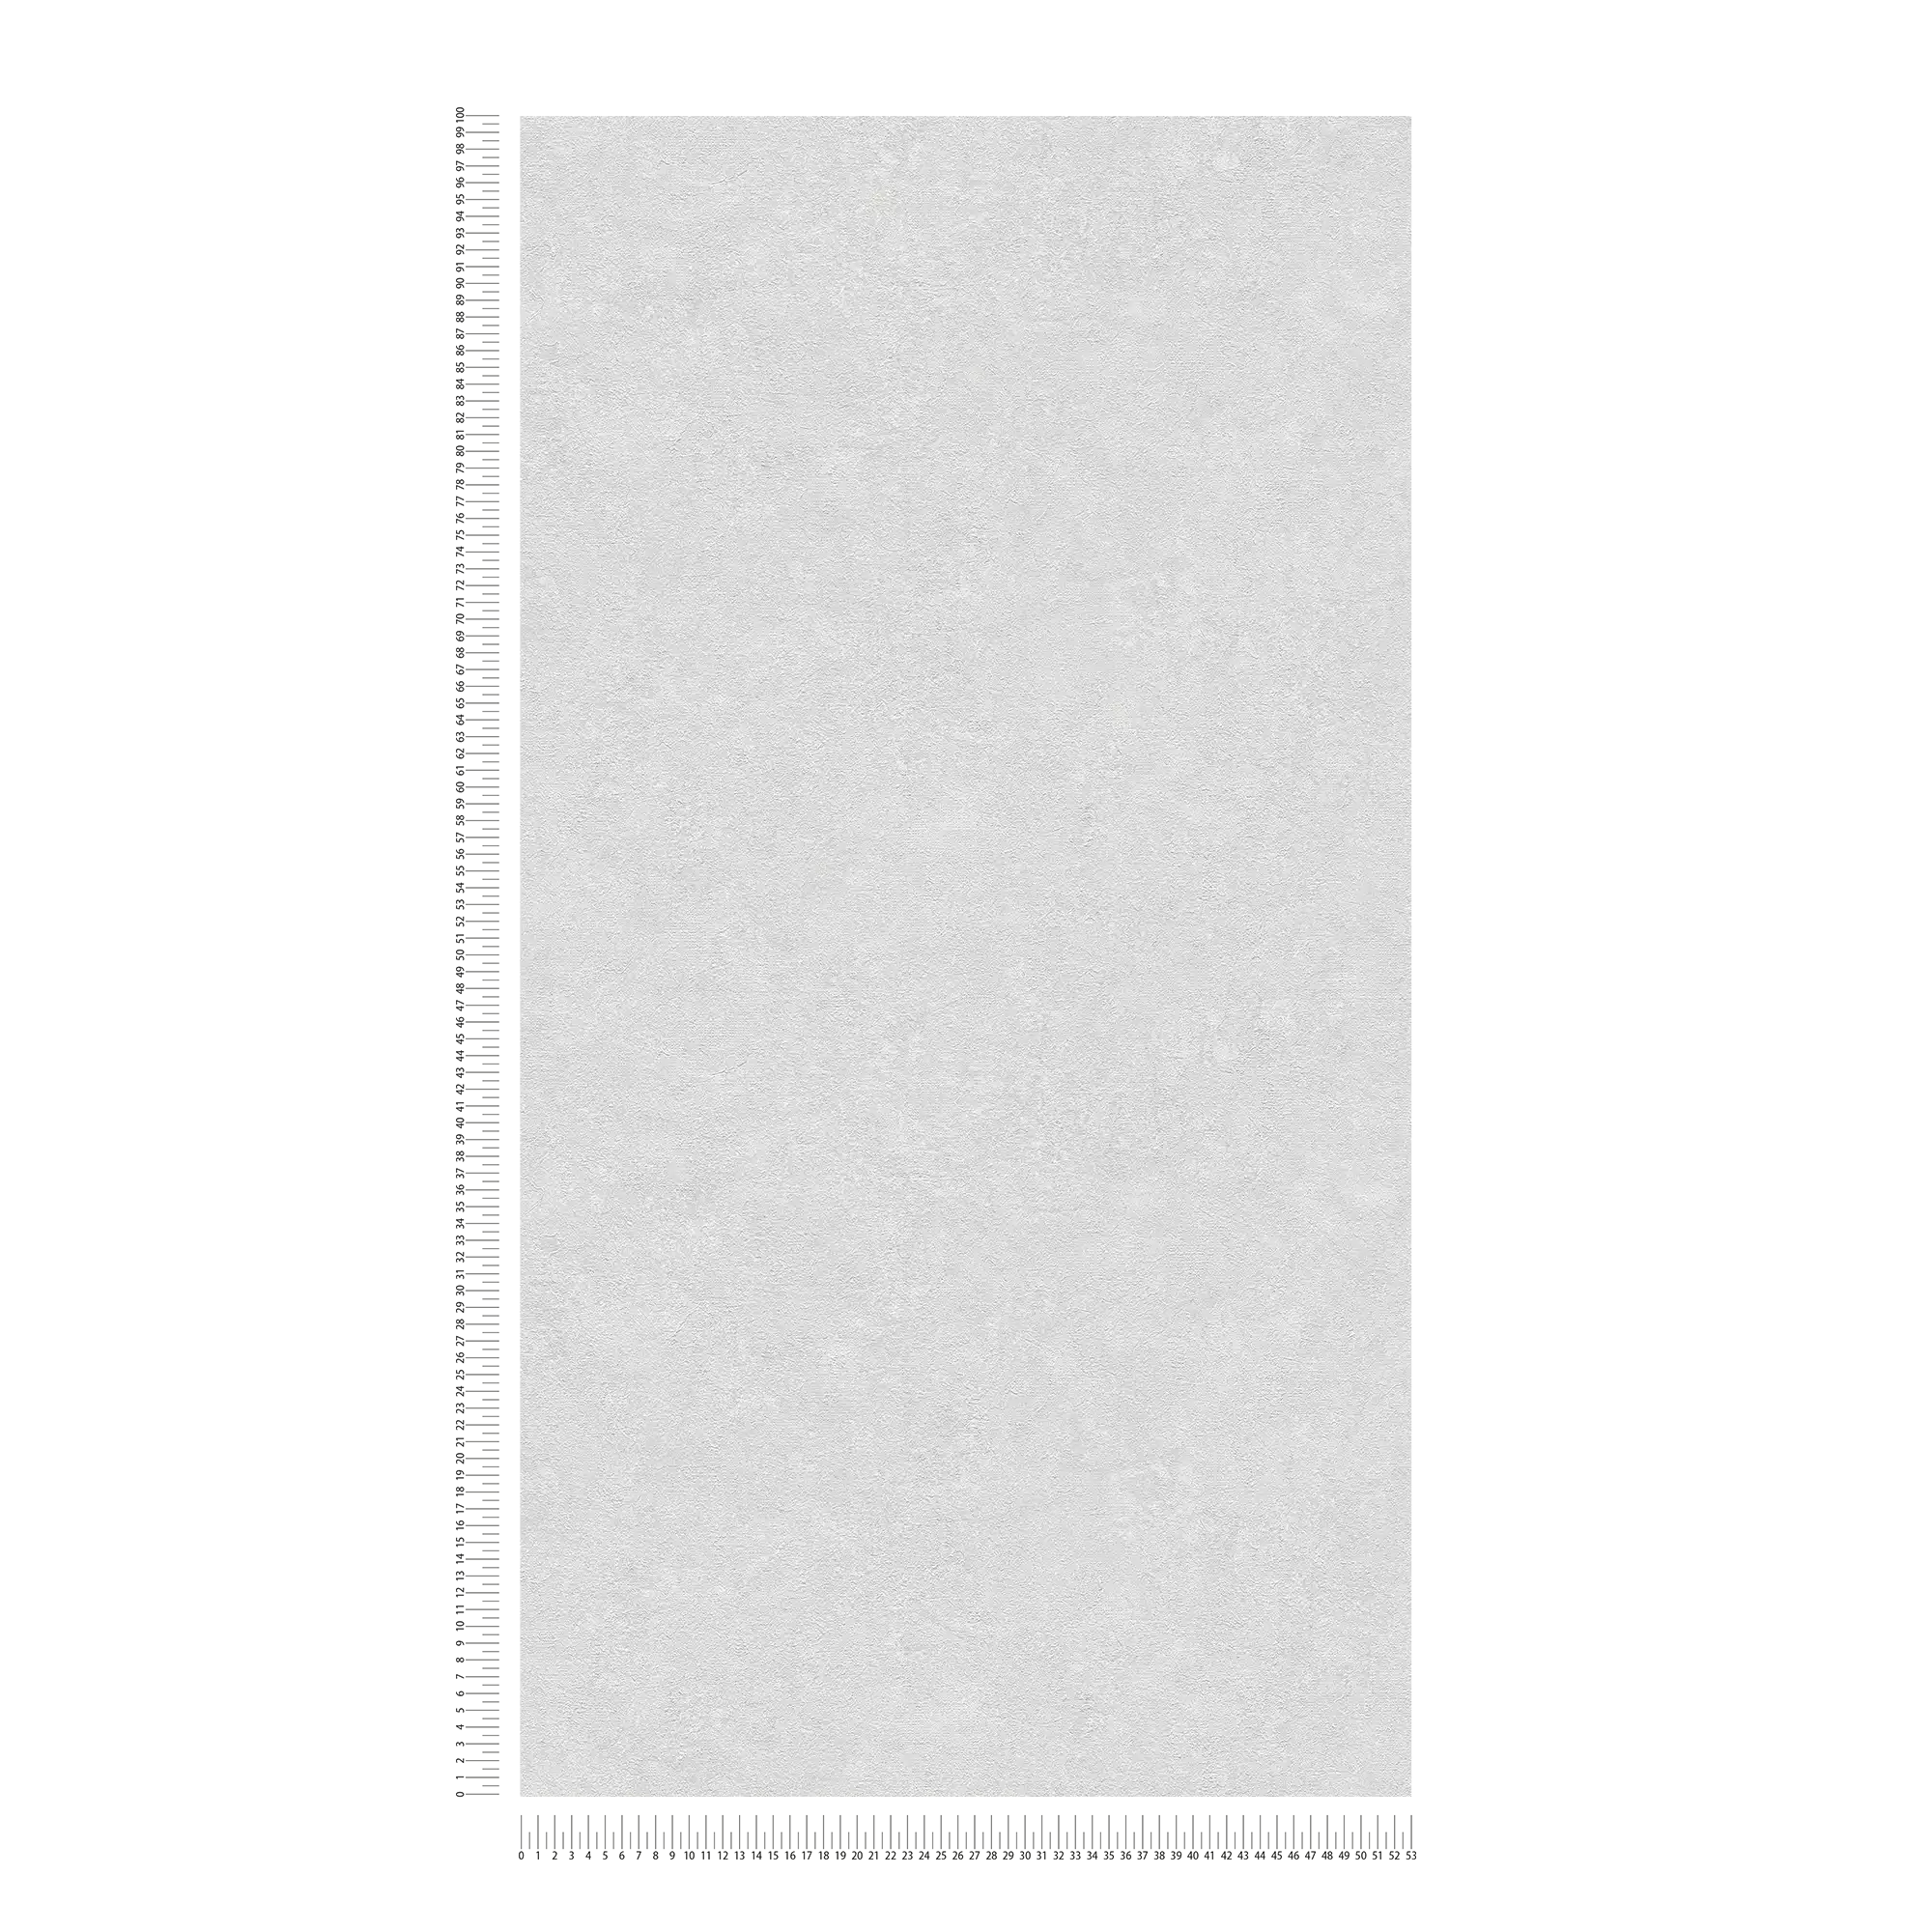             Carta da parati a tinta unita con effetto intonaco - grigio, bianco
        